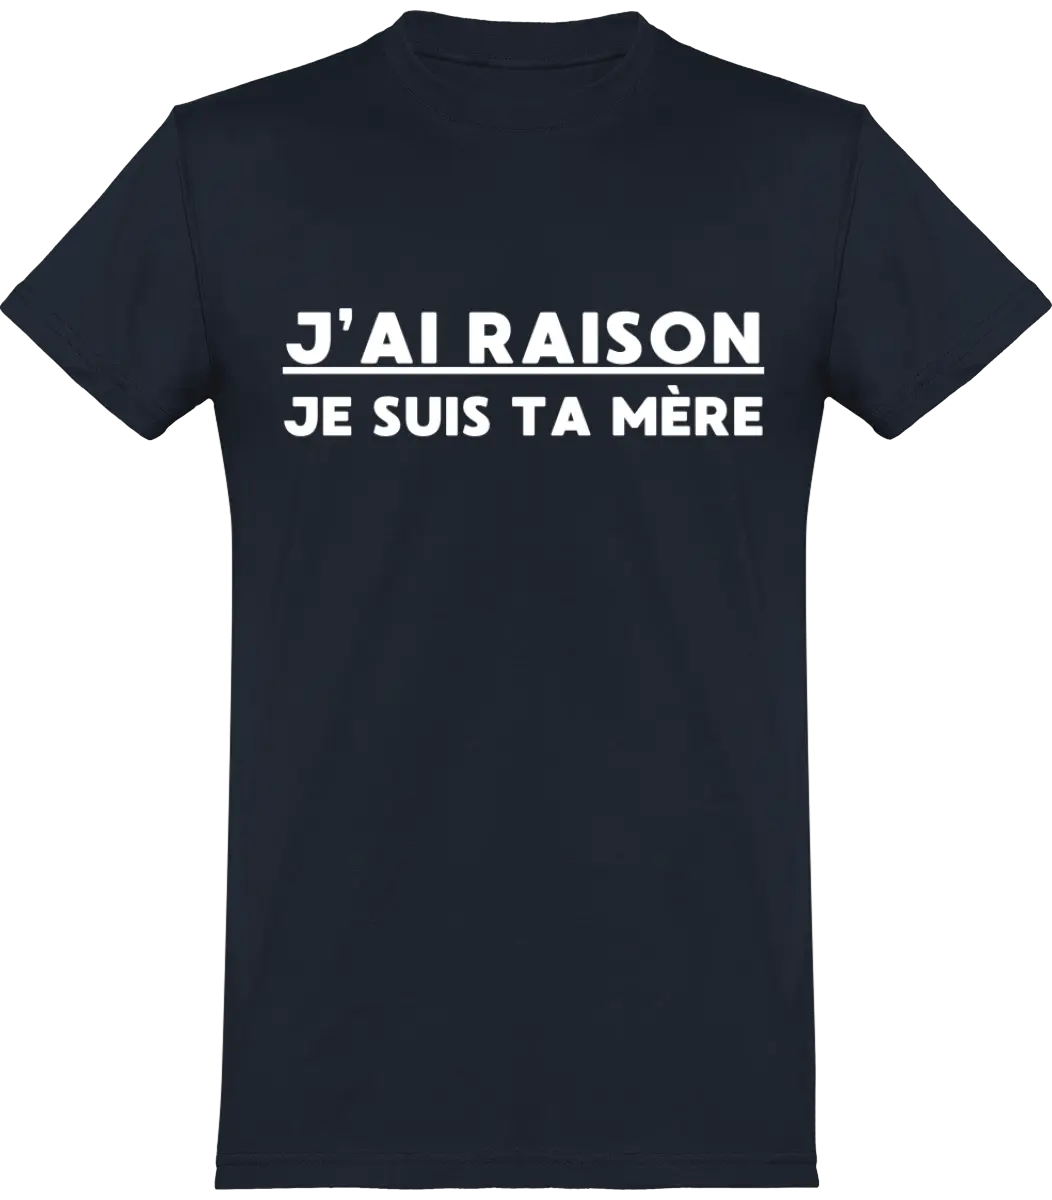 T-shirt maman "J'ai raison je suis ta mère" | Mixte - French Humour